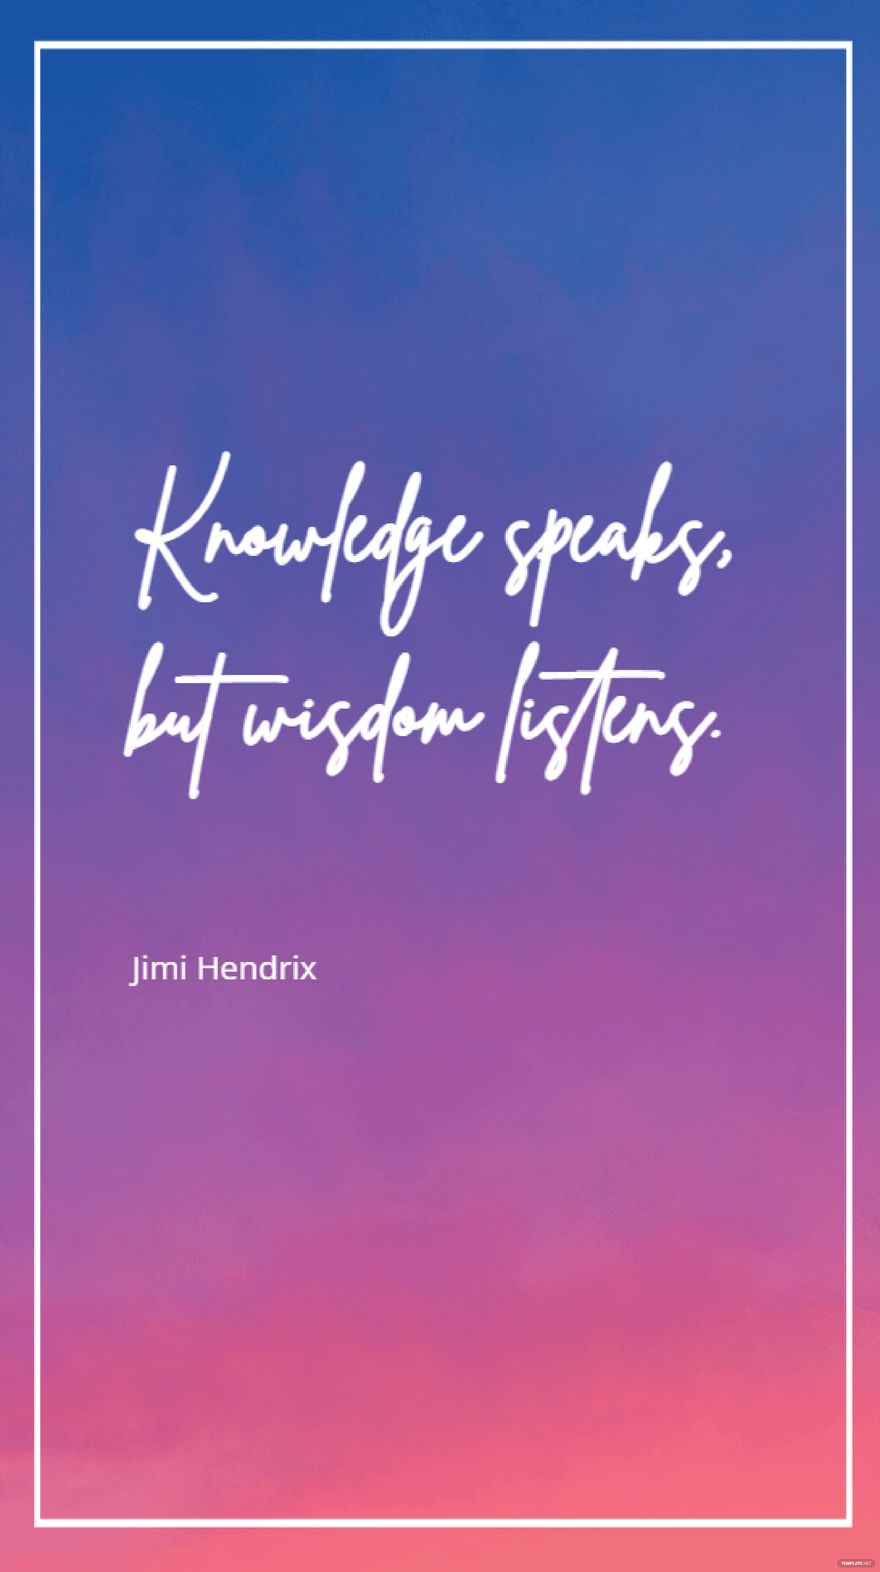 Jimi Hendrix - Knowledge speaks, but wisdom listens.